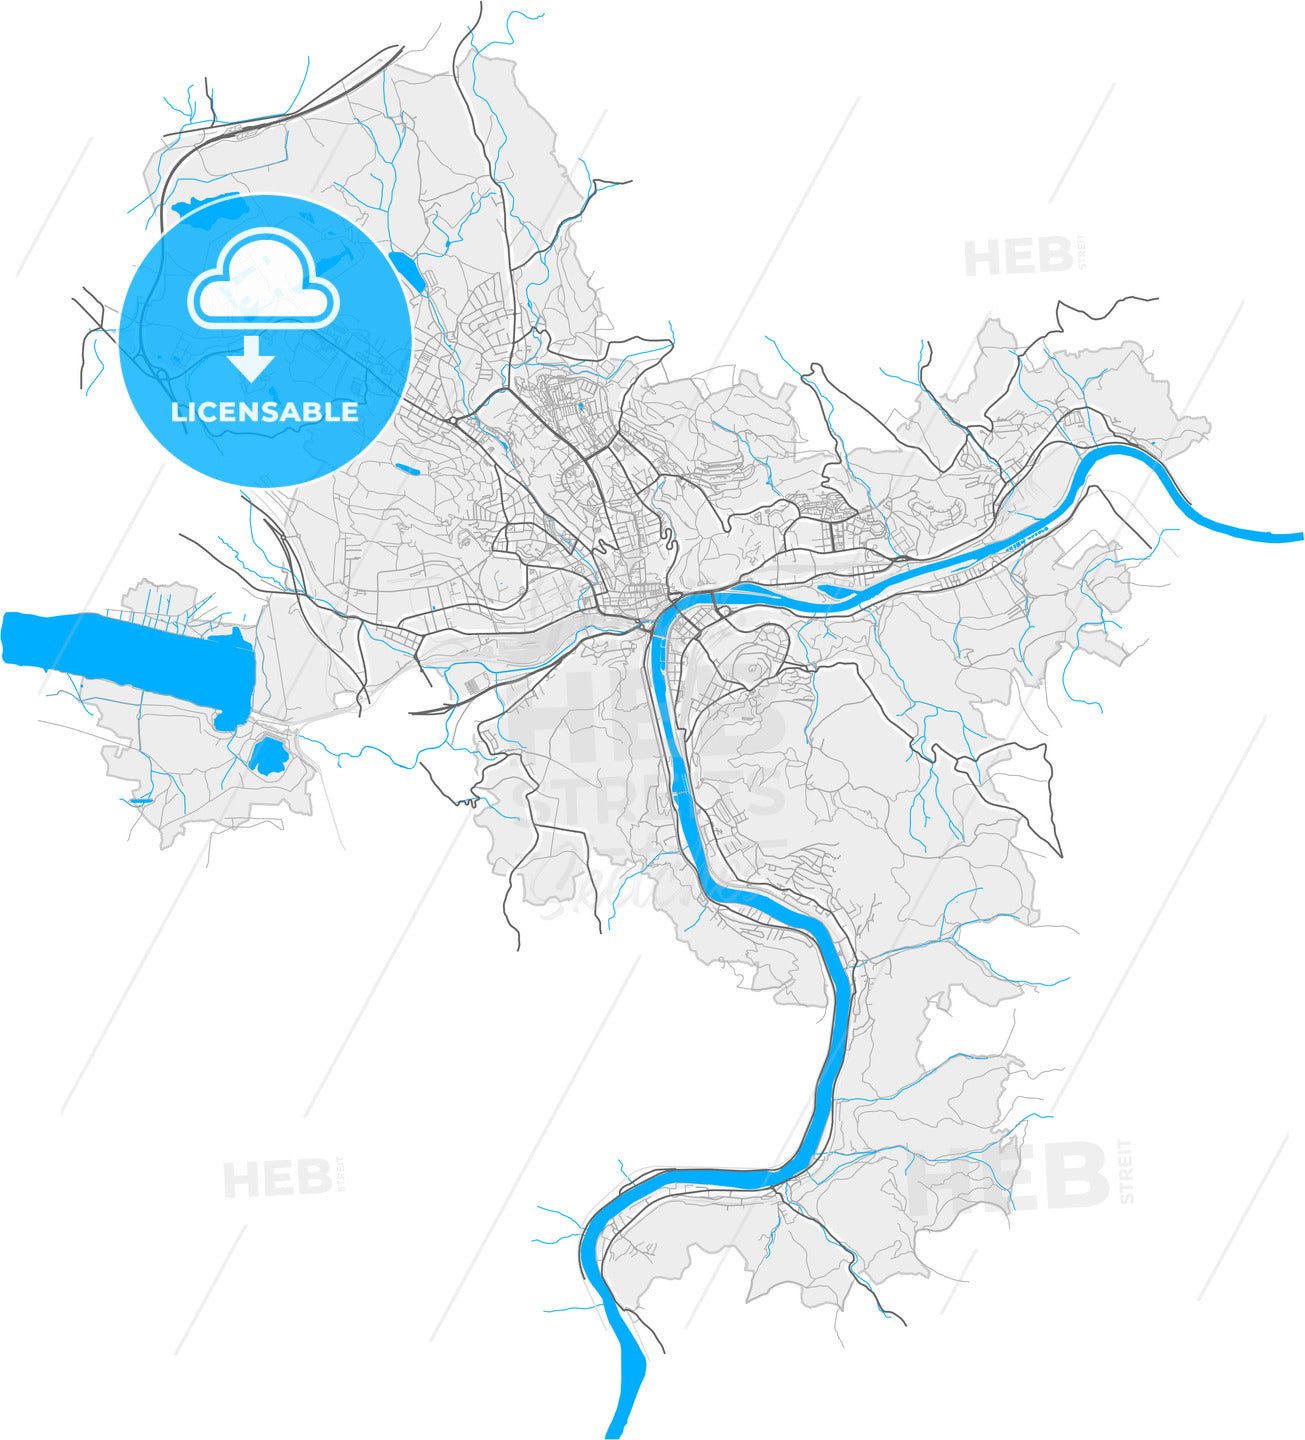 Ústí nad Labem, Czechia, high quality vector map